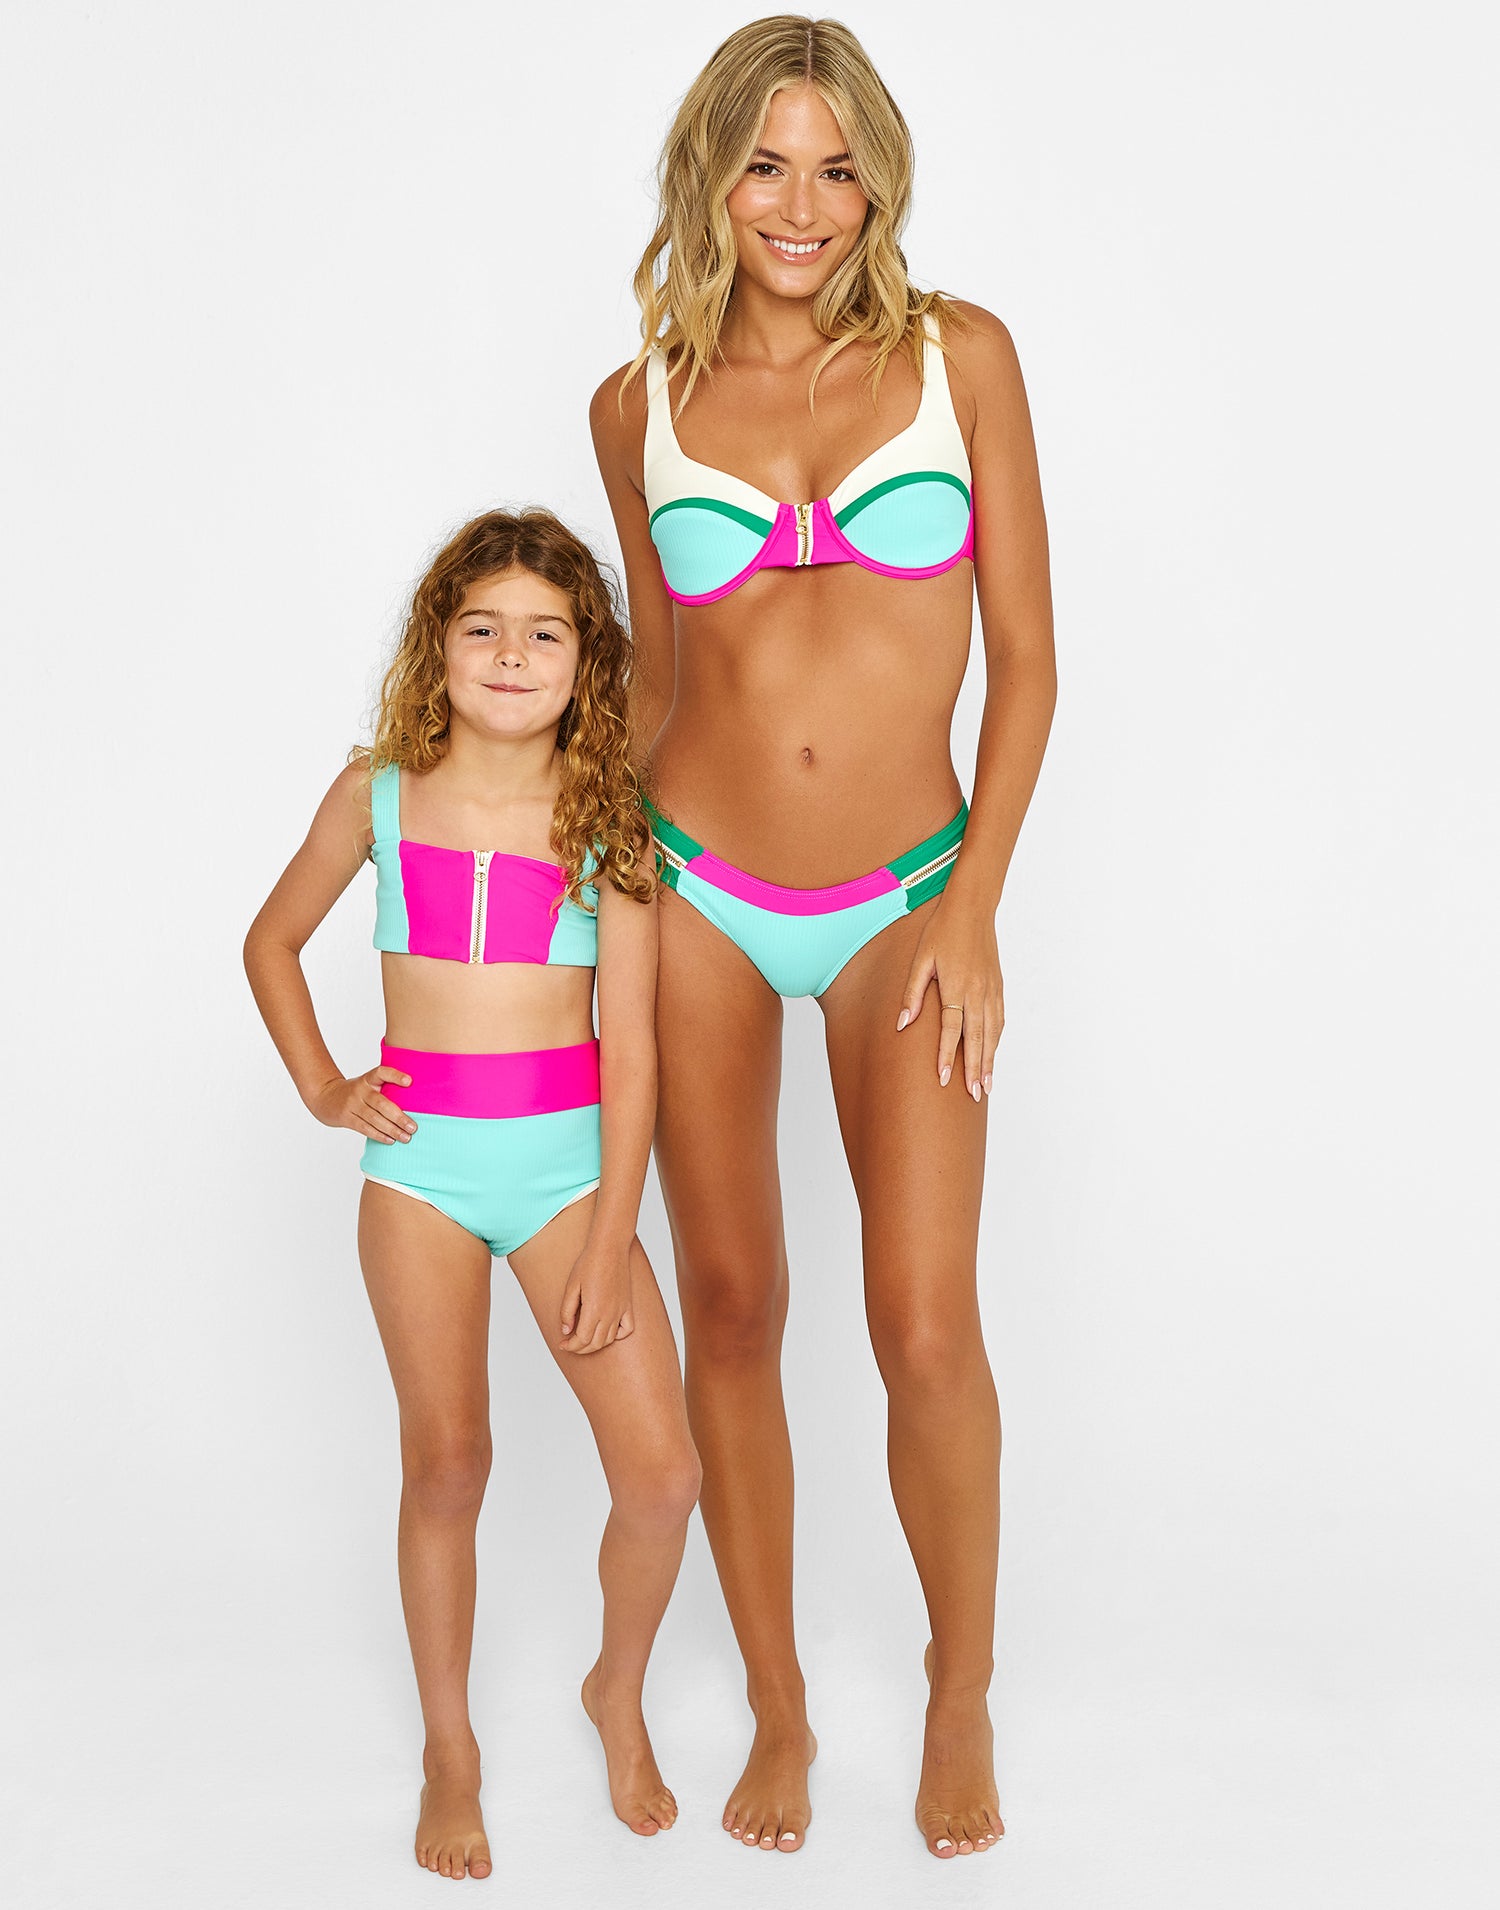 Kids' swimsuit set for girls